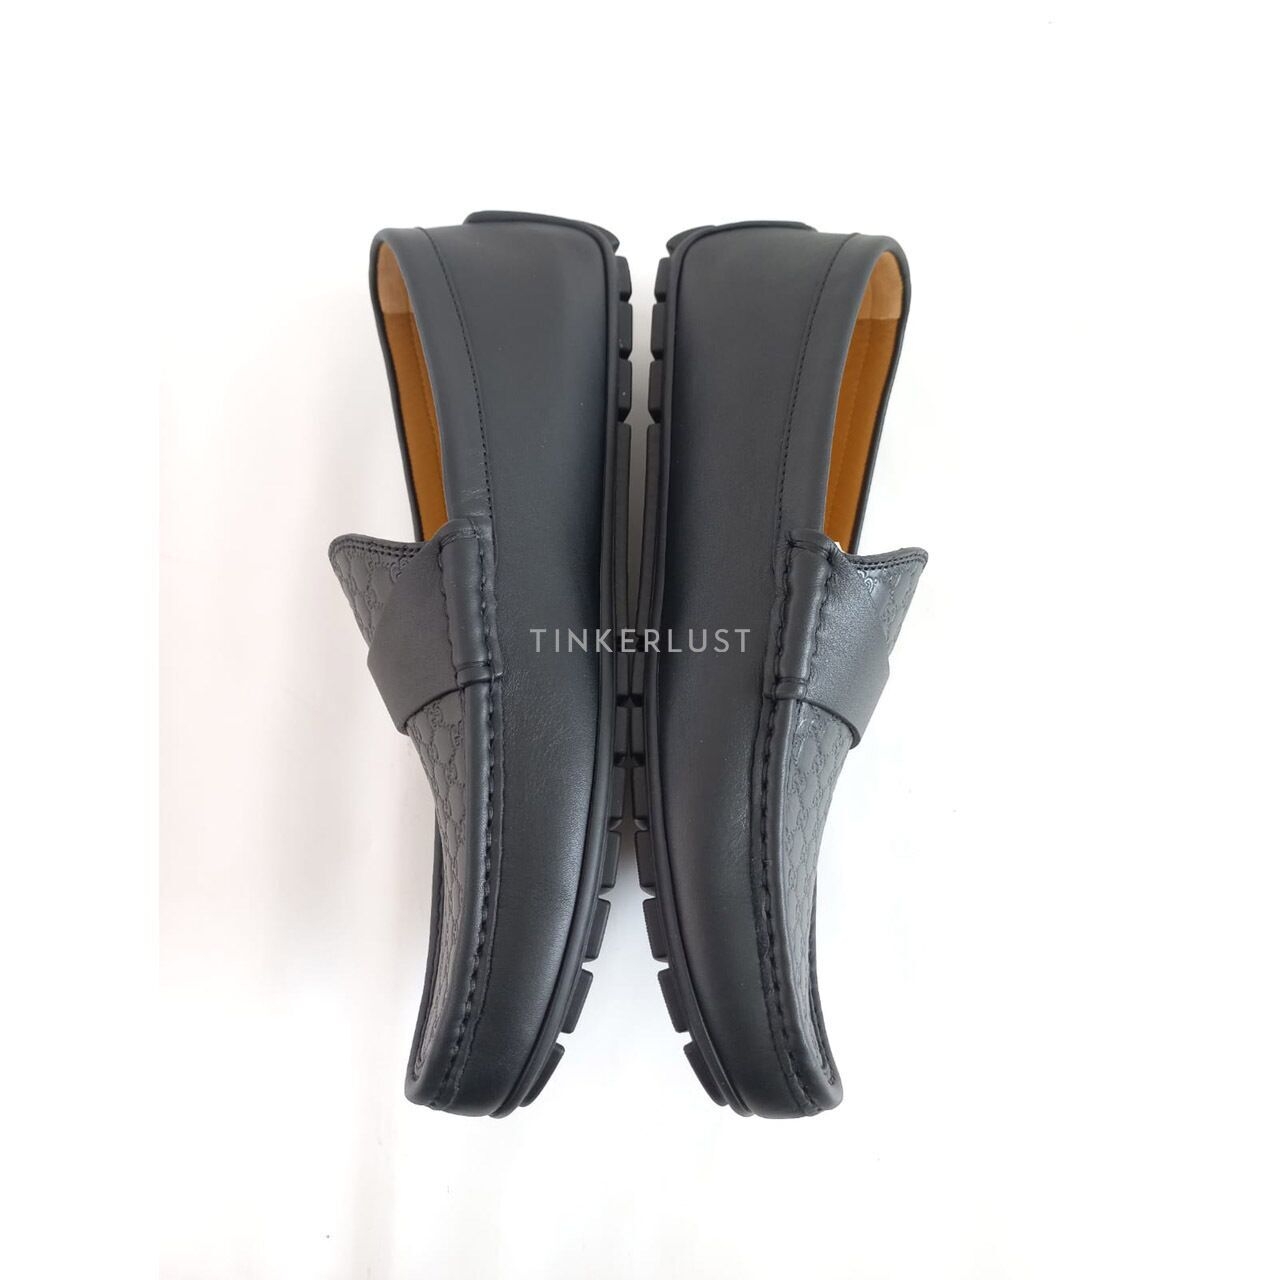 Gucci Microguccissima Black Leather Driver Loafers